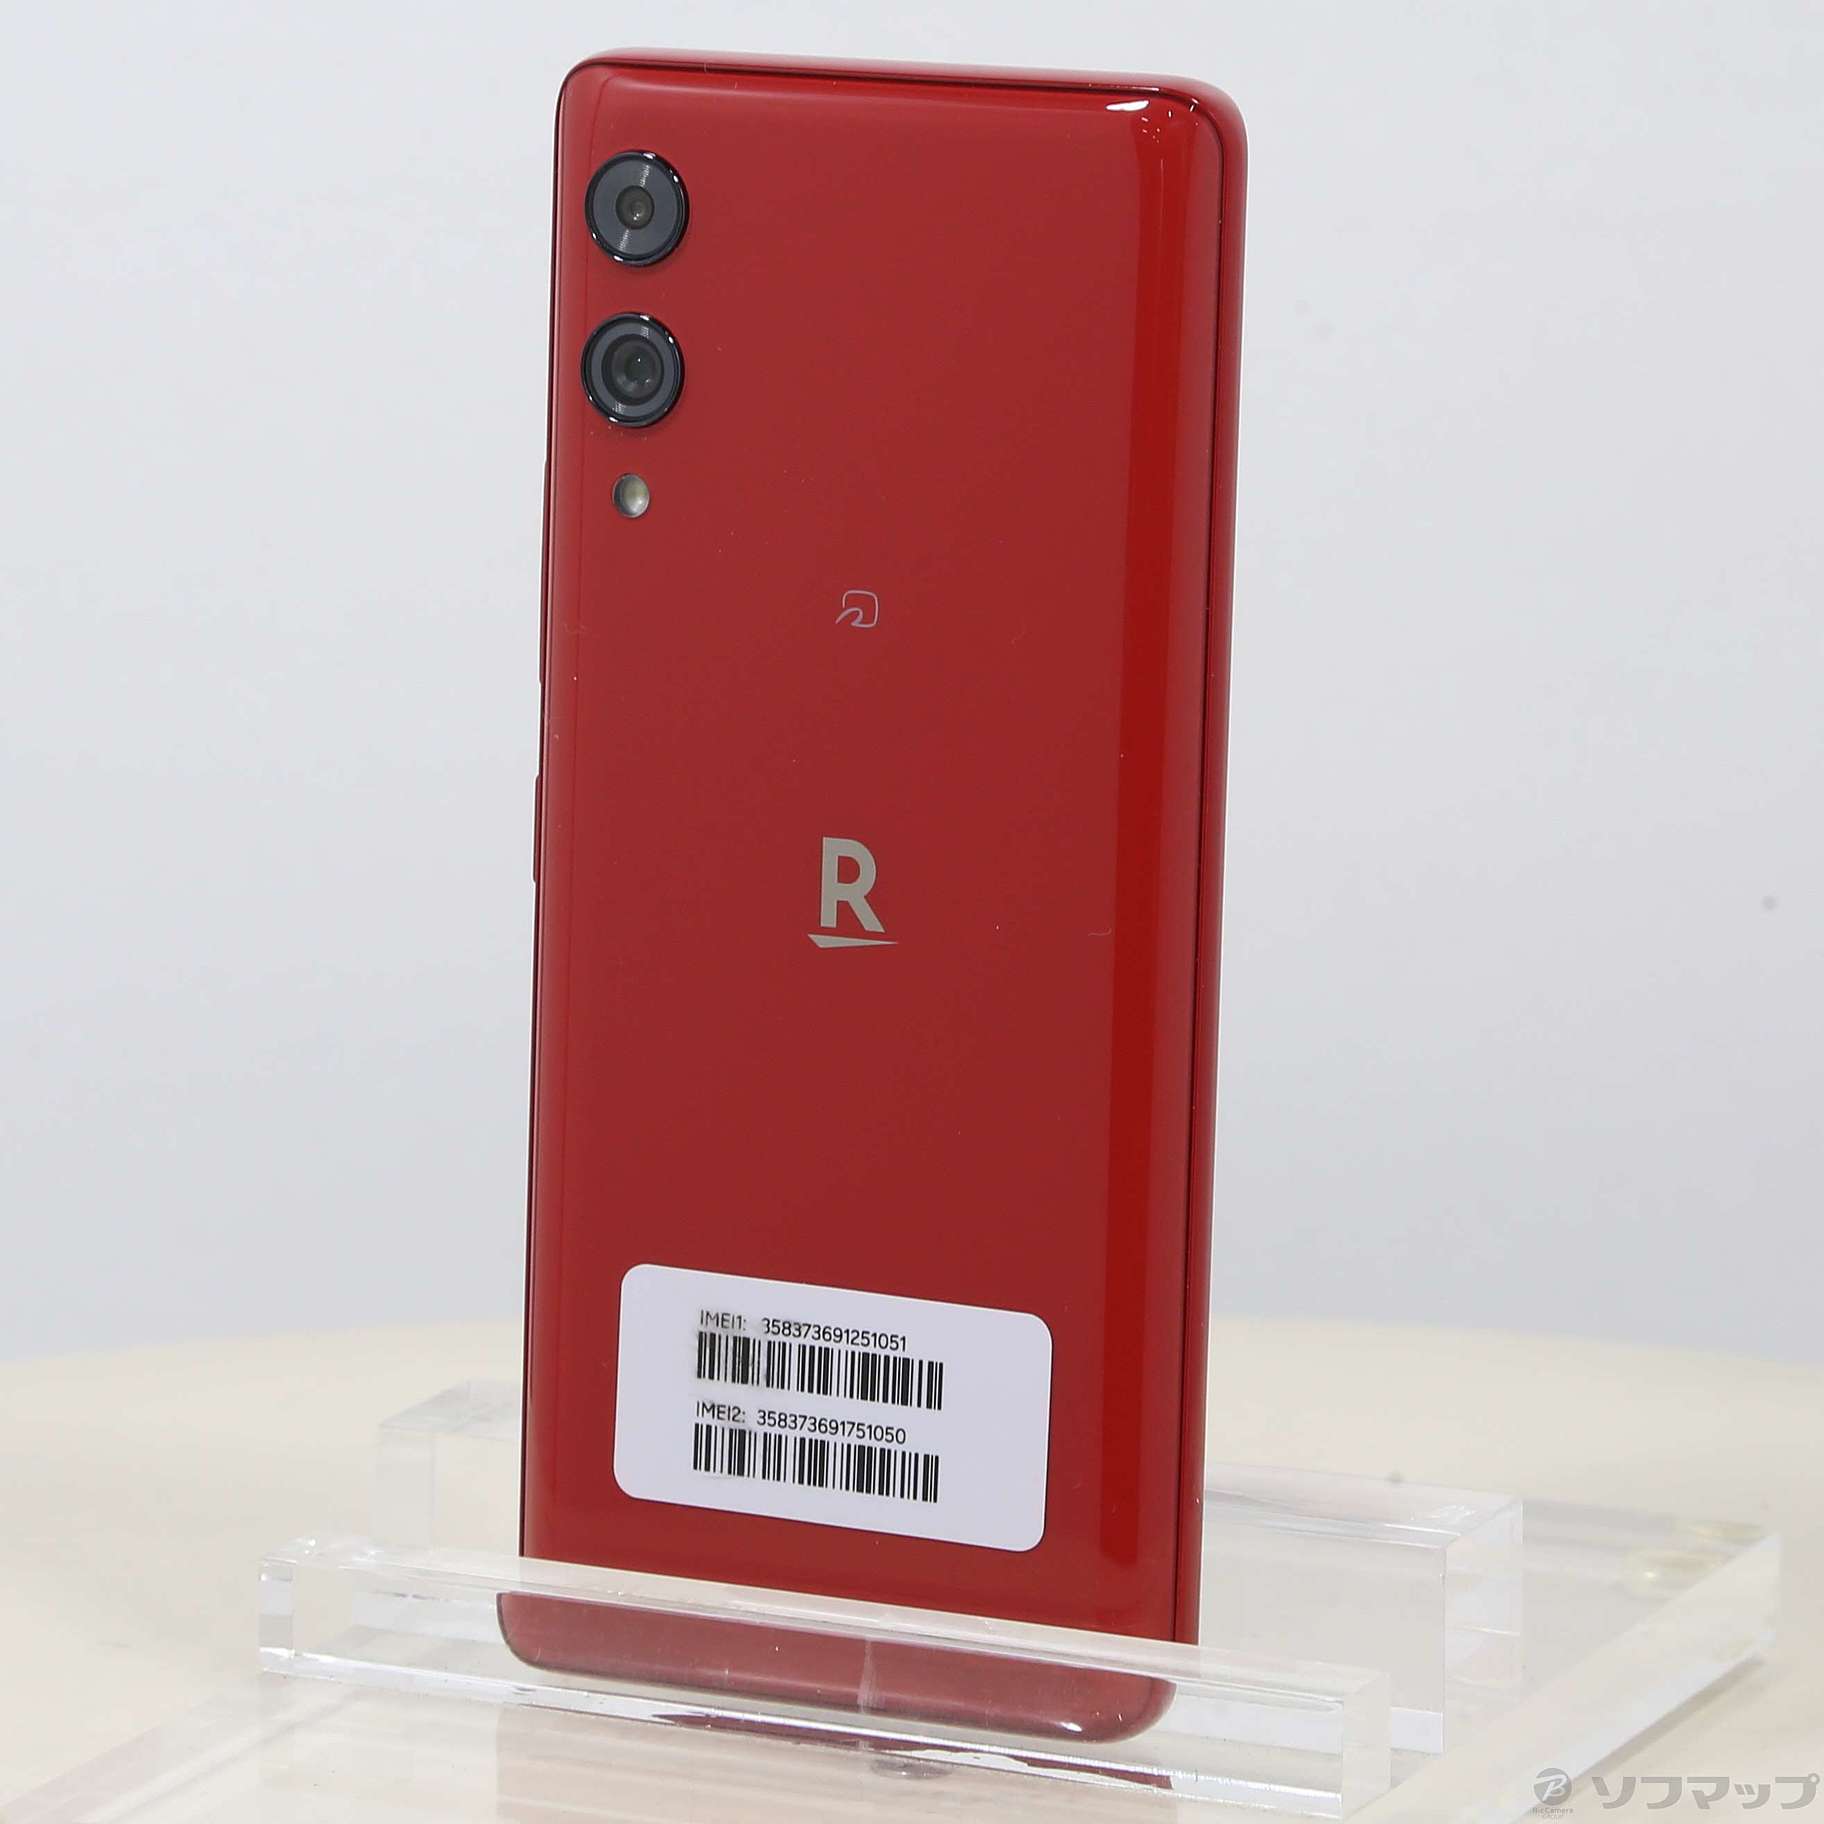 Rakuten Hand 5G P780 Red - スマートフォン本体